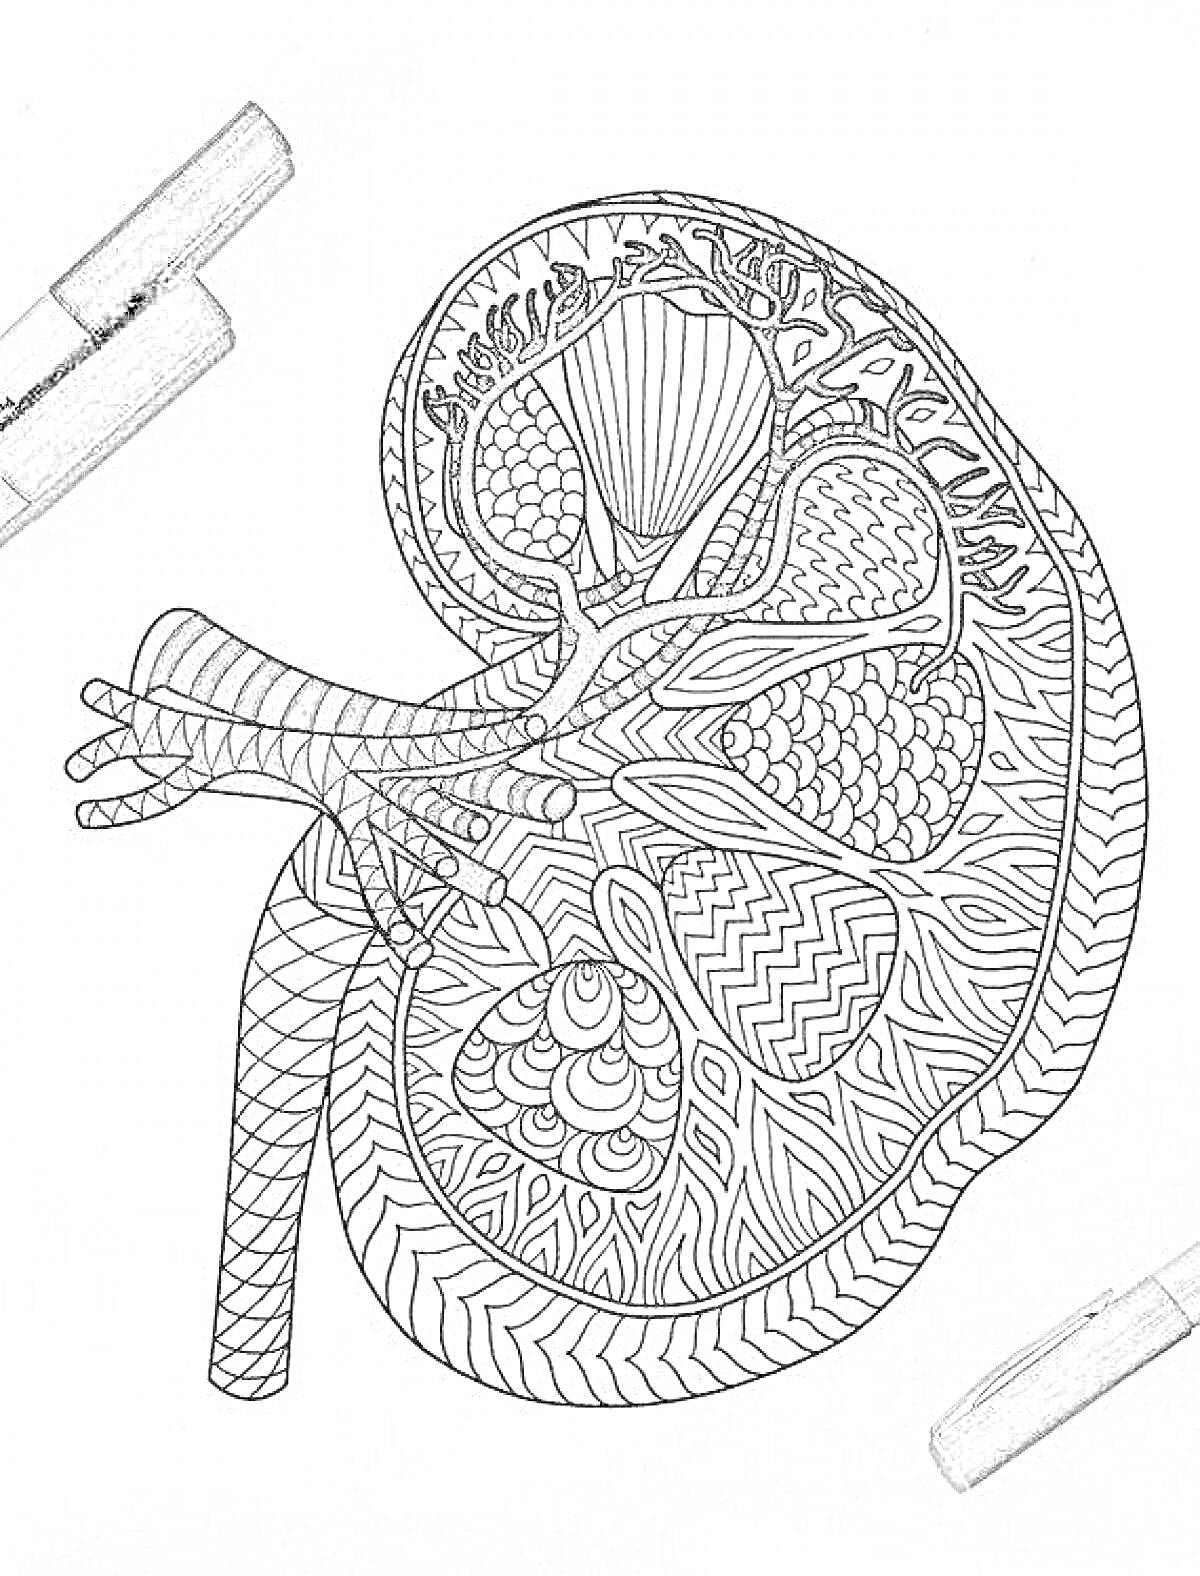 Анатомическая раскраска почки с сегментами, артериями и узорами